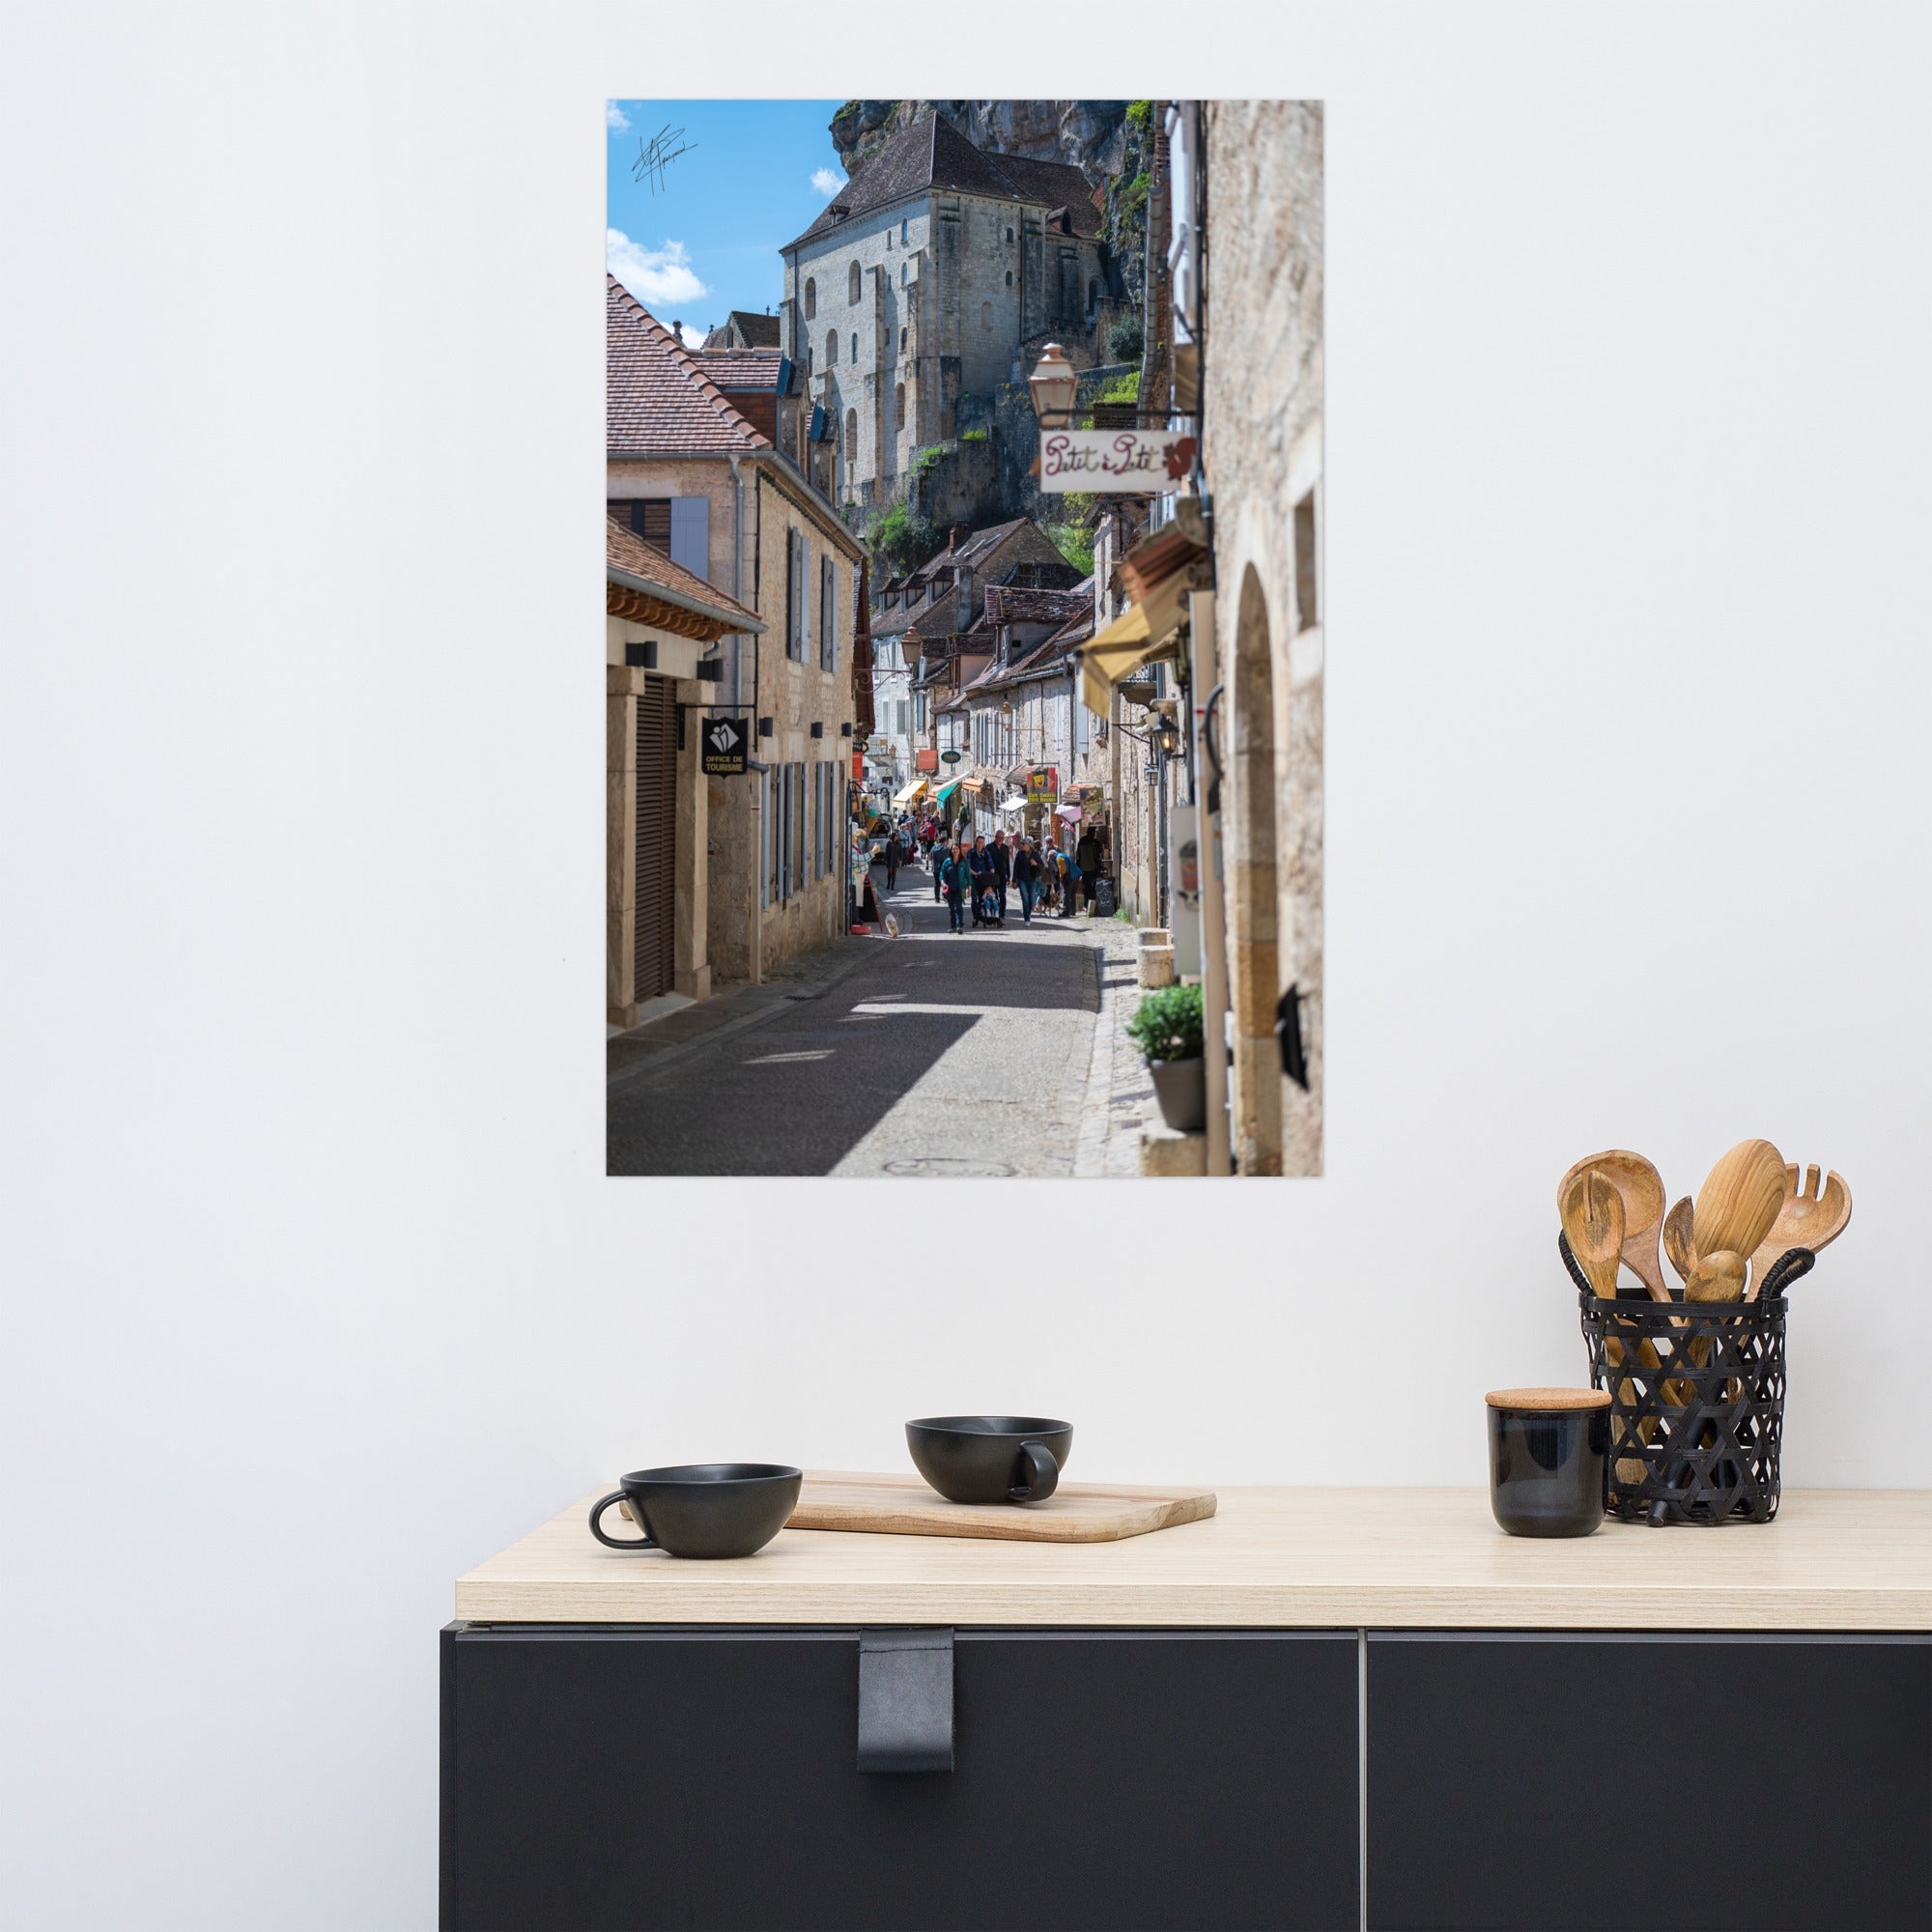 Photographie de la Rue Roland le Preux à Rocamadour, rue historique et commerçante.Photographie de la Rue Roland le Preux à Rocamadour, rue historique et commerçante.